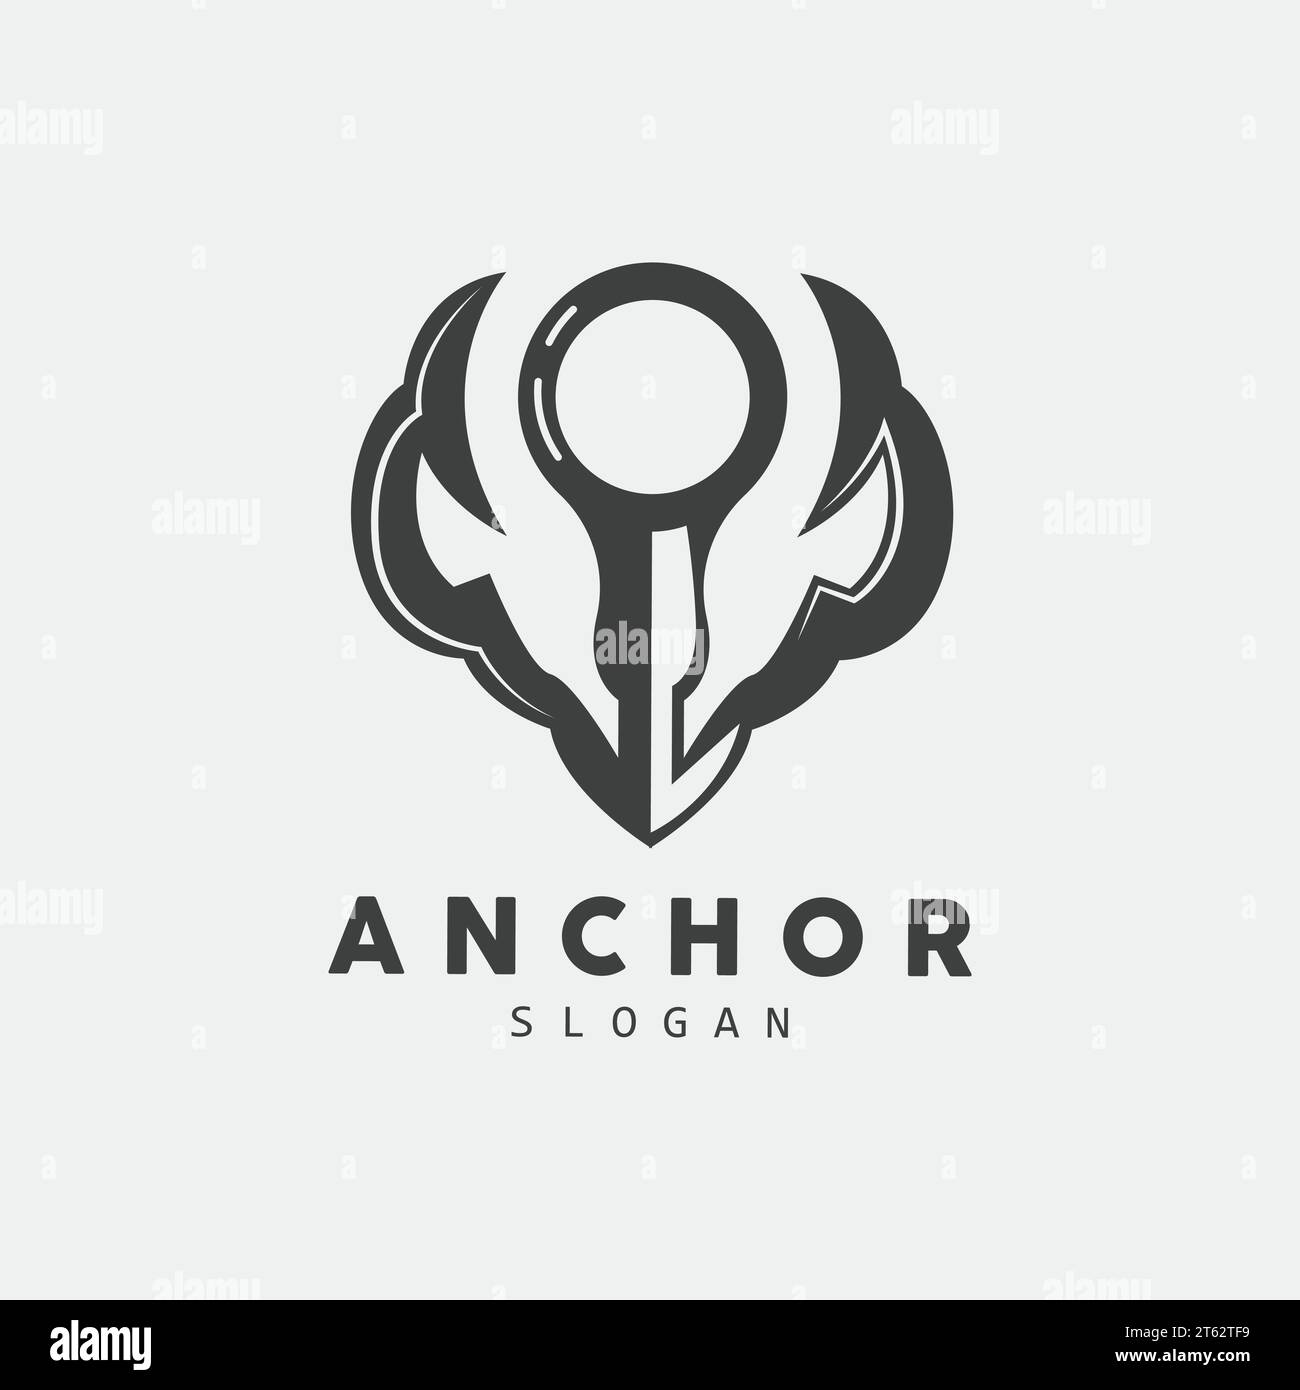 Anchor Logo, Ocean Ship Vector, Simple Minimalist Design, Anchor Icon, Spartan, Ocean, Symbol Template Illustration Stock Vector